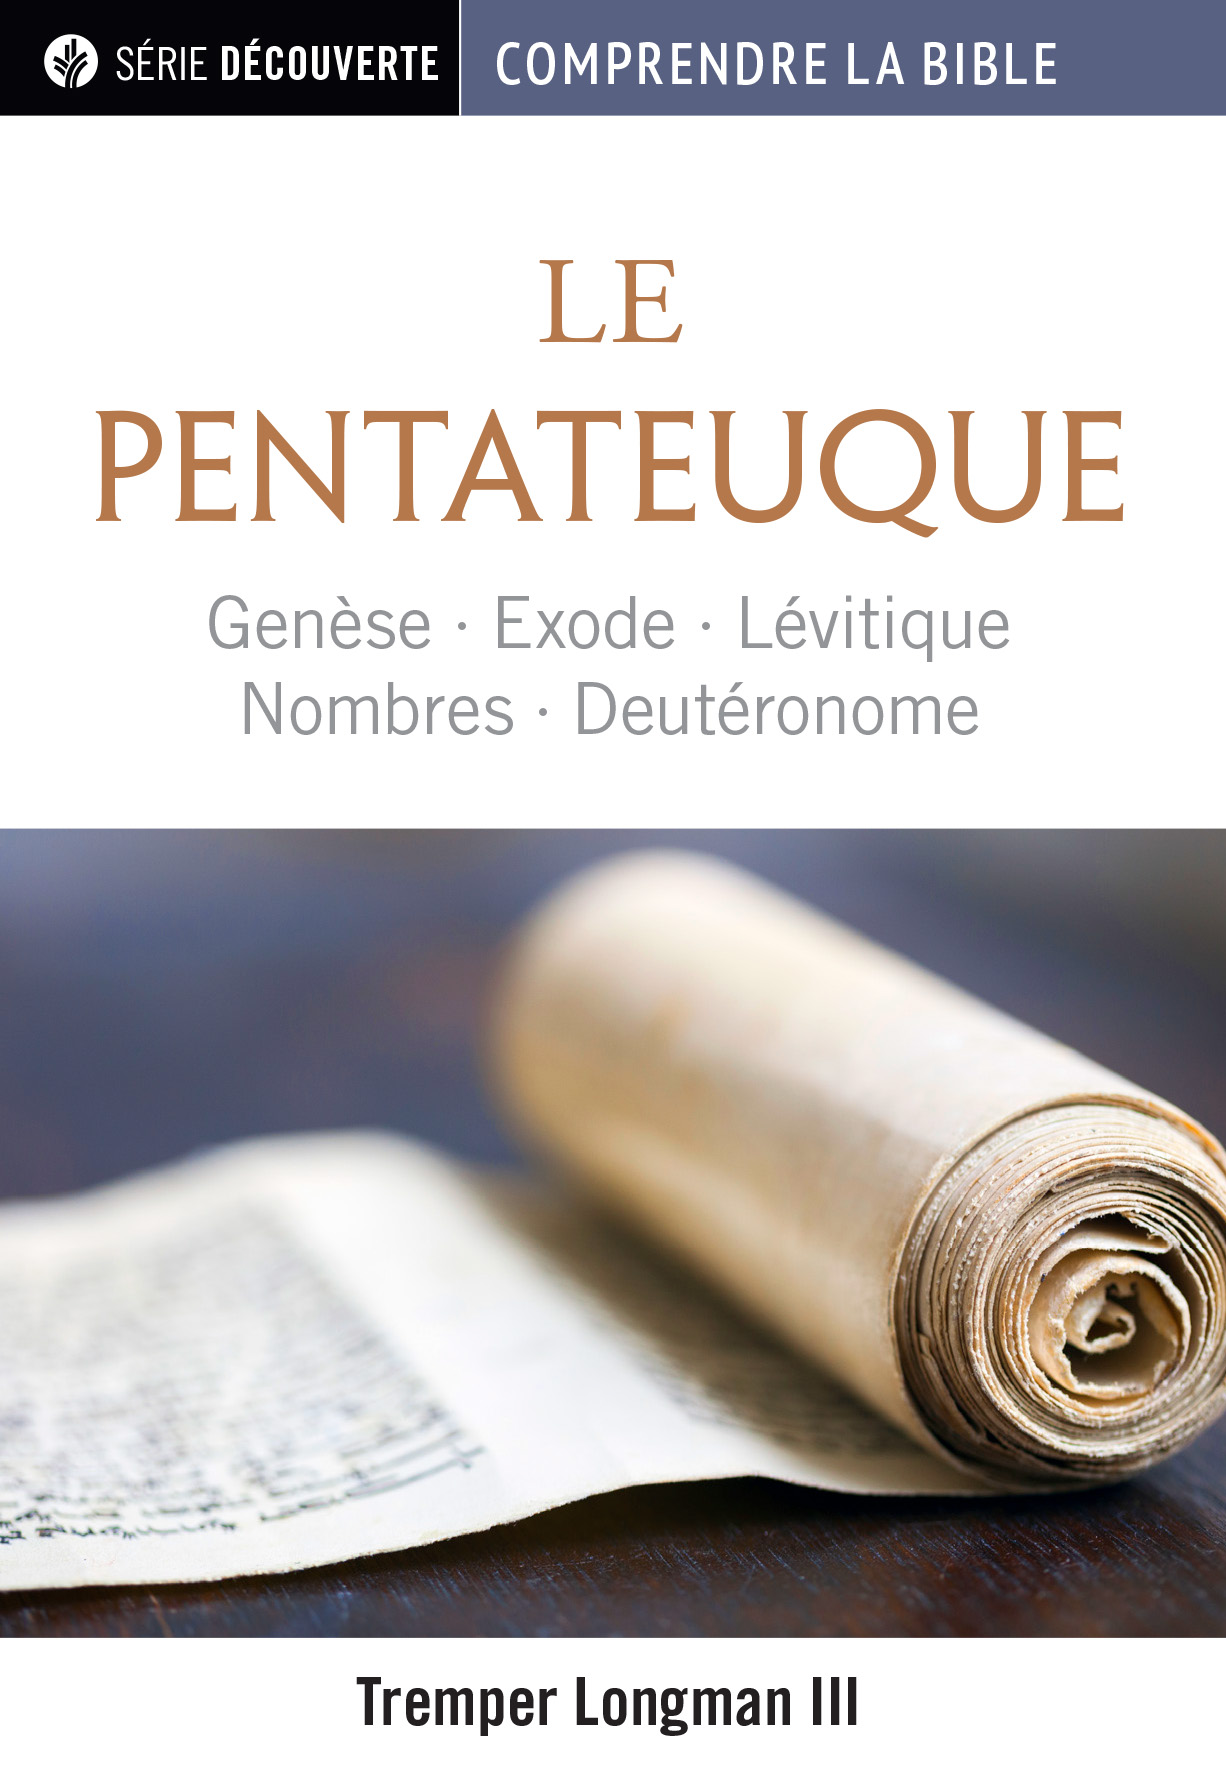 Pentateuque (Le) - Genèse, Exode, Lévitique, Nombres et Deutéronome [brochure NPQ série découverte - Comprendre la Bible]